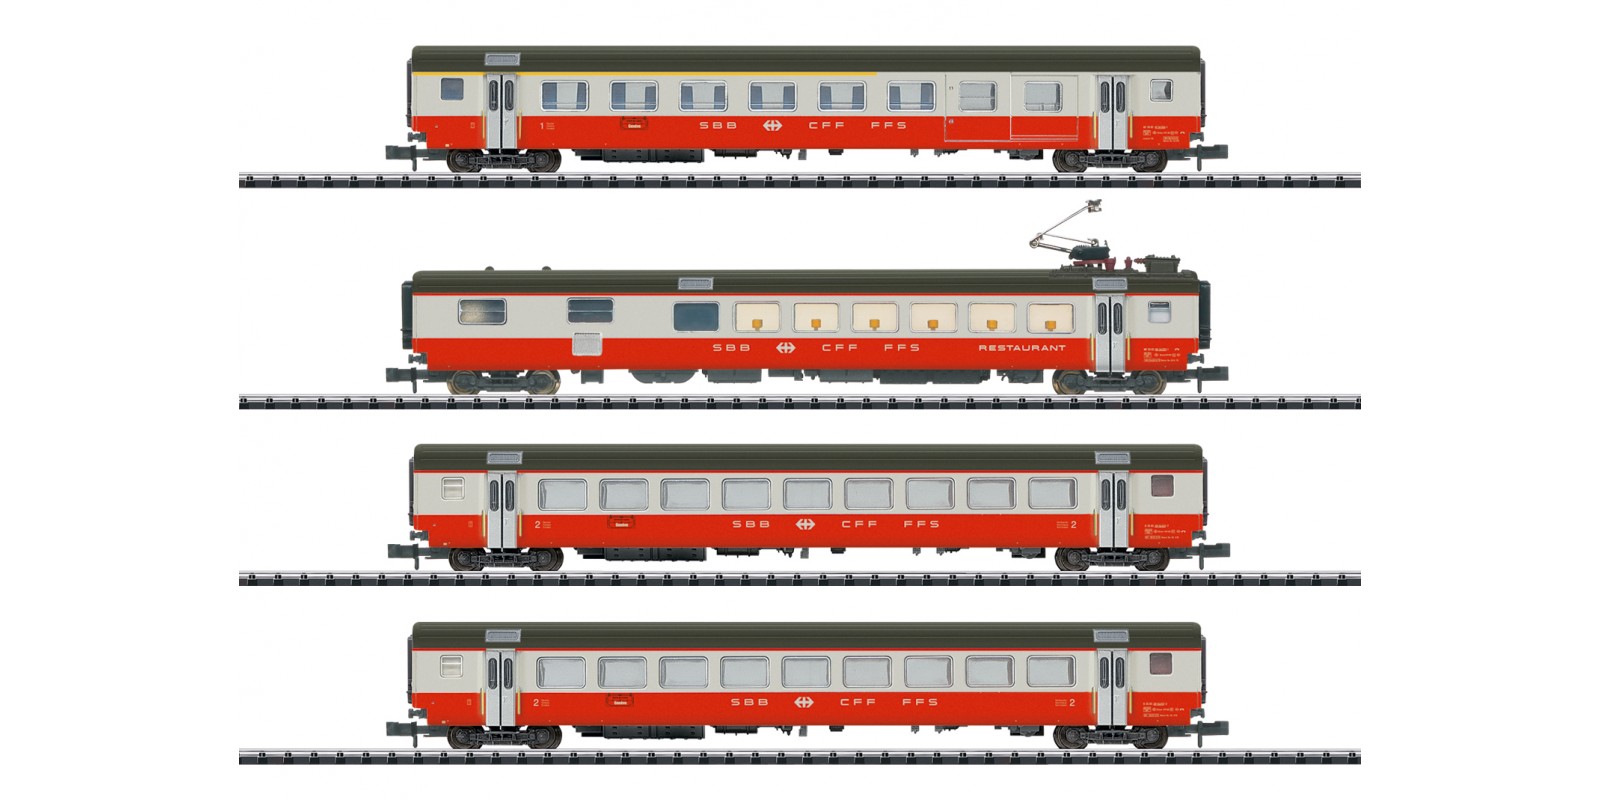 T18720 Swiss Express Express Train Car Set Part 1